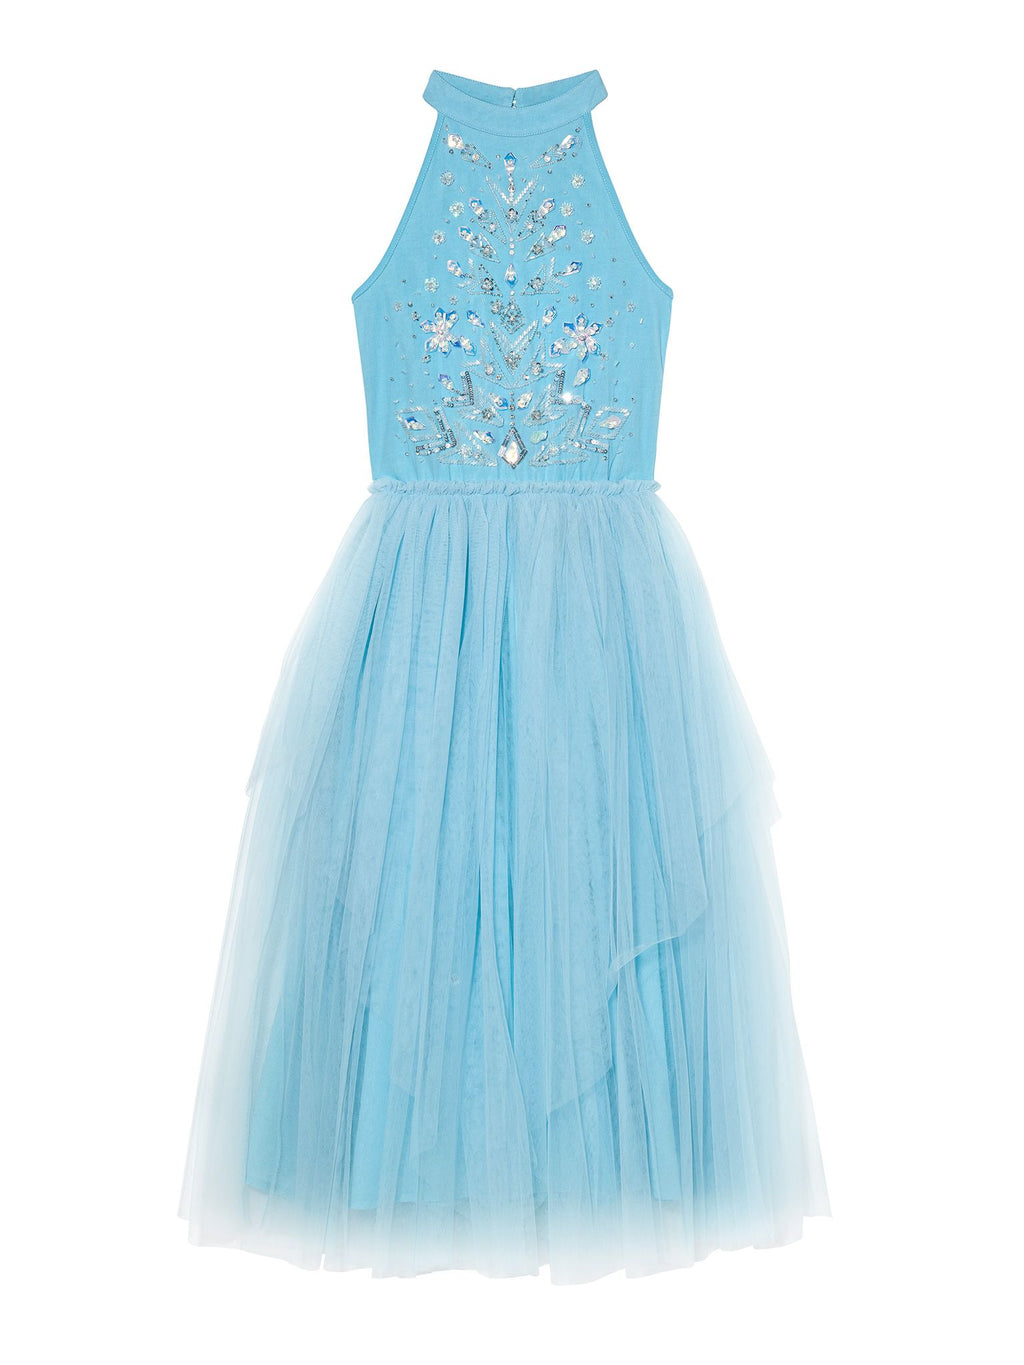 Tutu Du Monde x Disney Frozen Queen Tutu Dress - Frozen Blue